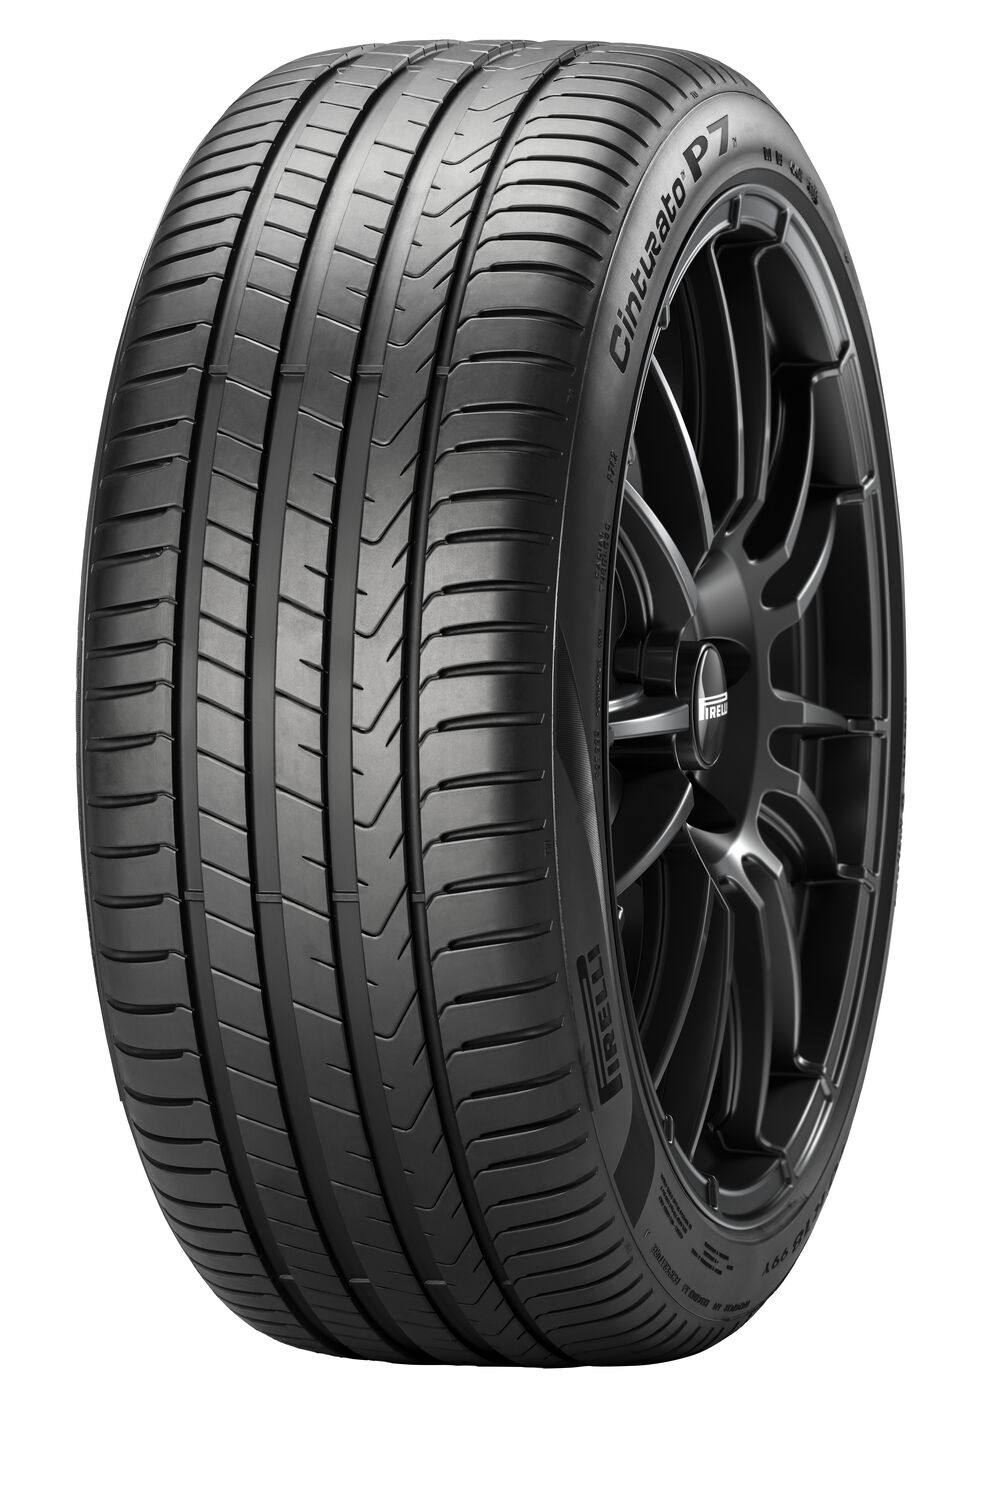 Gomme Nuove Pirelli 205/55 R16 91V CINTURATO P7 P7C2 pneumatici nuovi Estivo